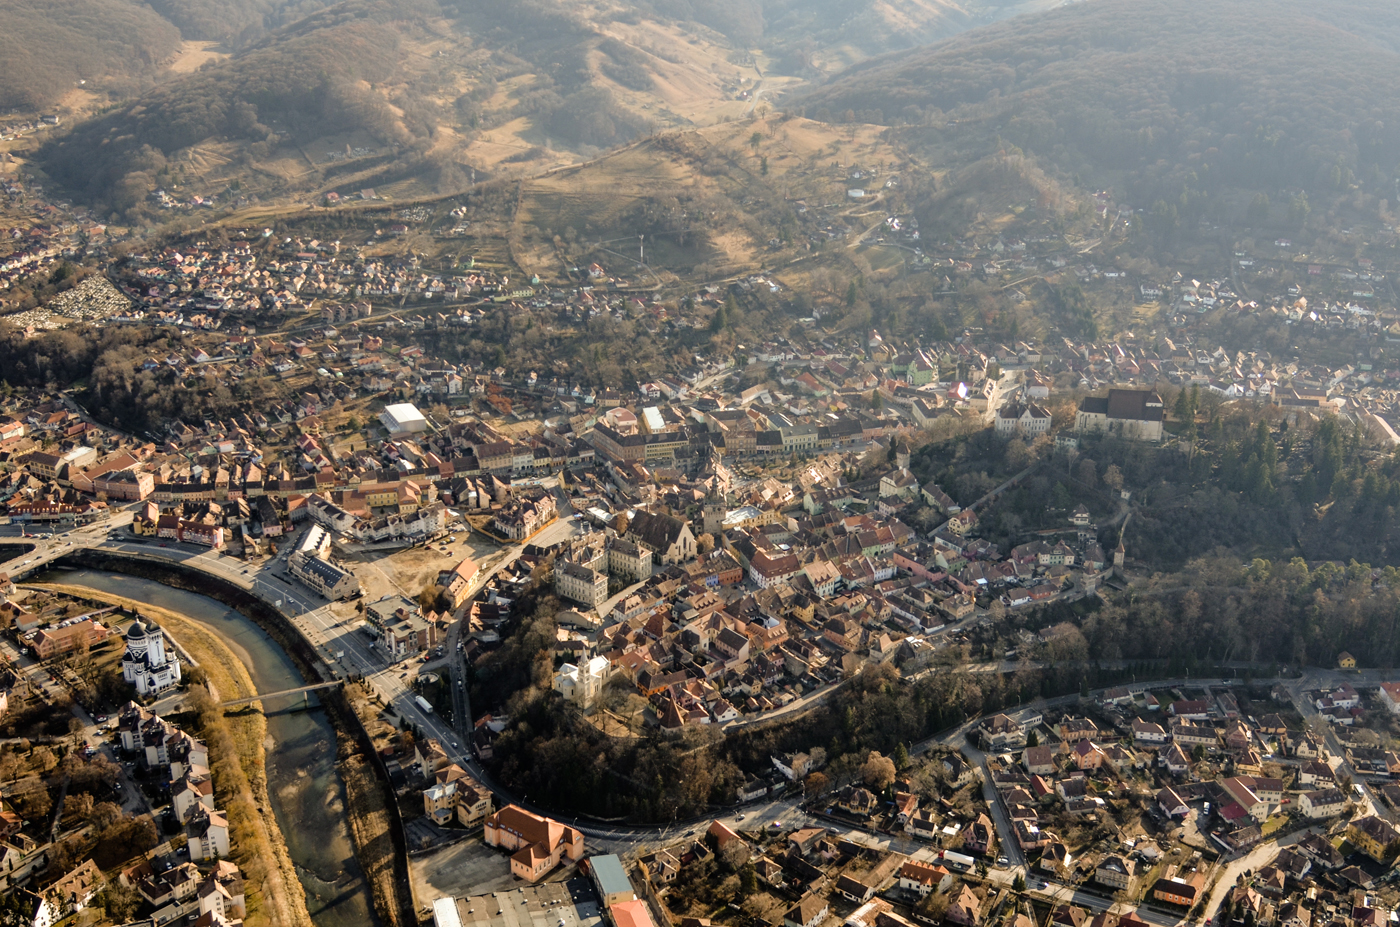 Expoziție de fotografie aeriană - Zbor peste Transilvania